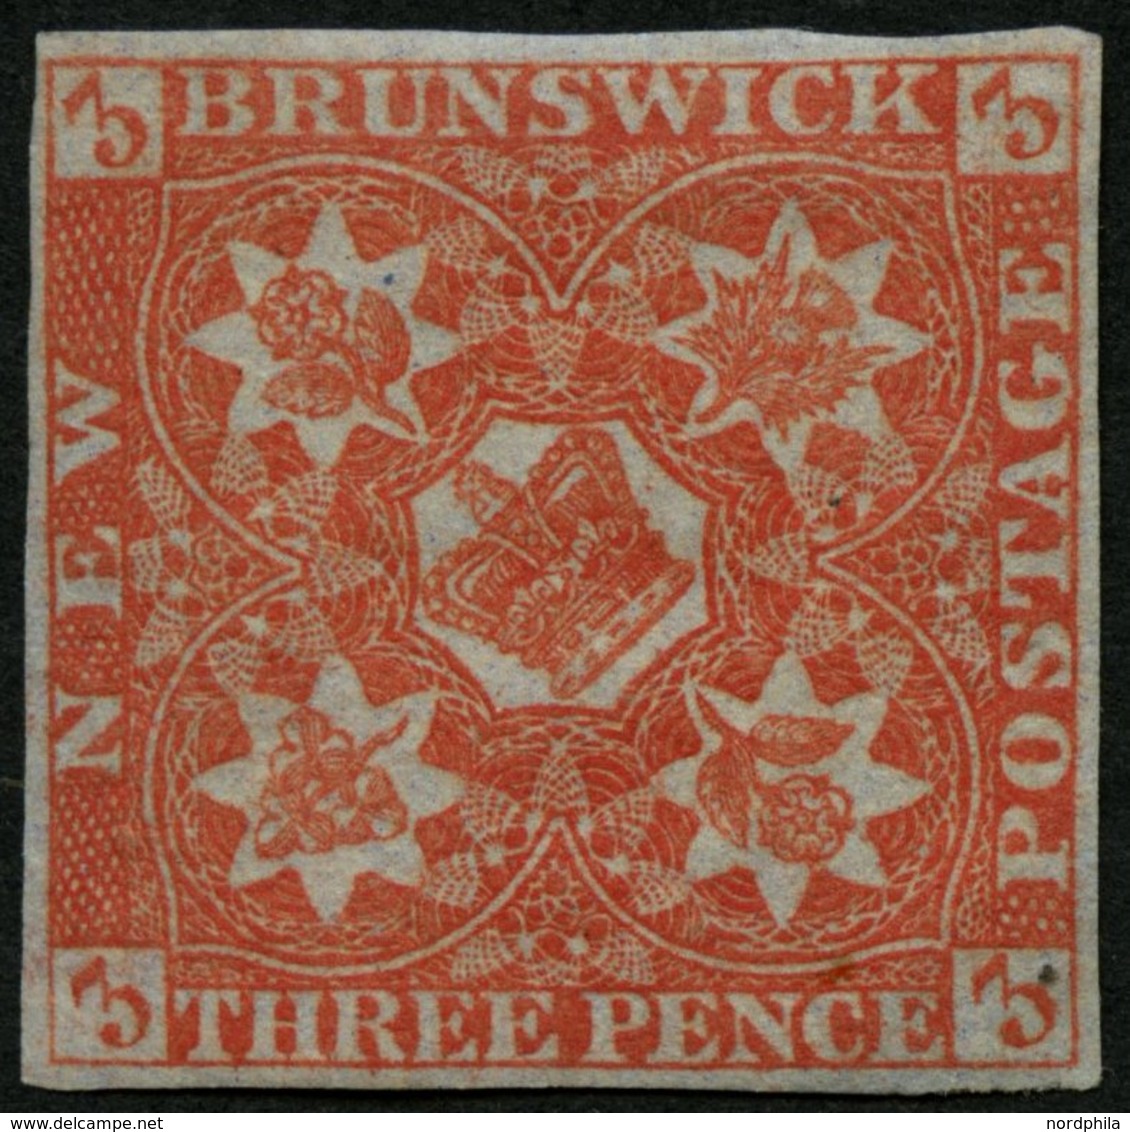 KANADA - NEUBRAUNSCHWEIG 1 *, 1851, 3 P. Rot, Falzrest, Vollrandiges Farbfrisches Prachtstück, Mi. 2800.- - Gebraucht